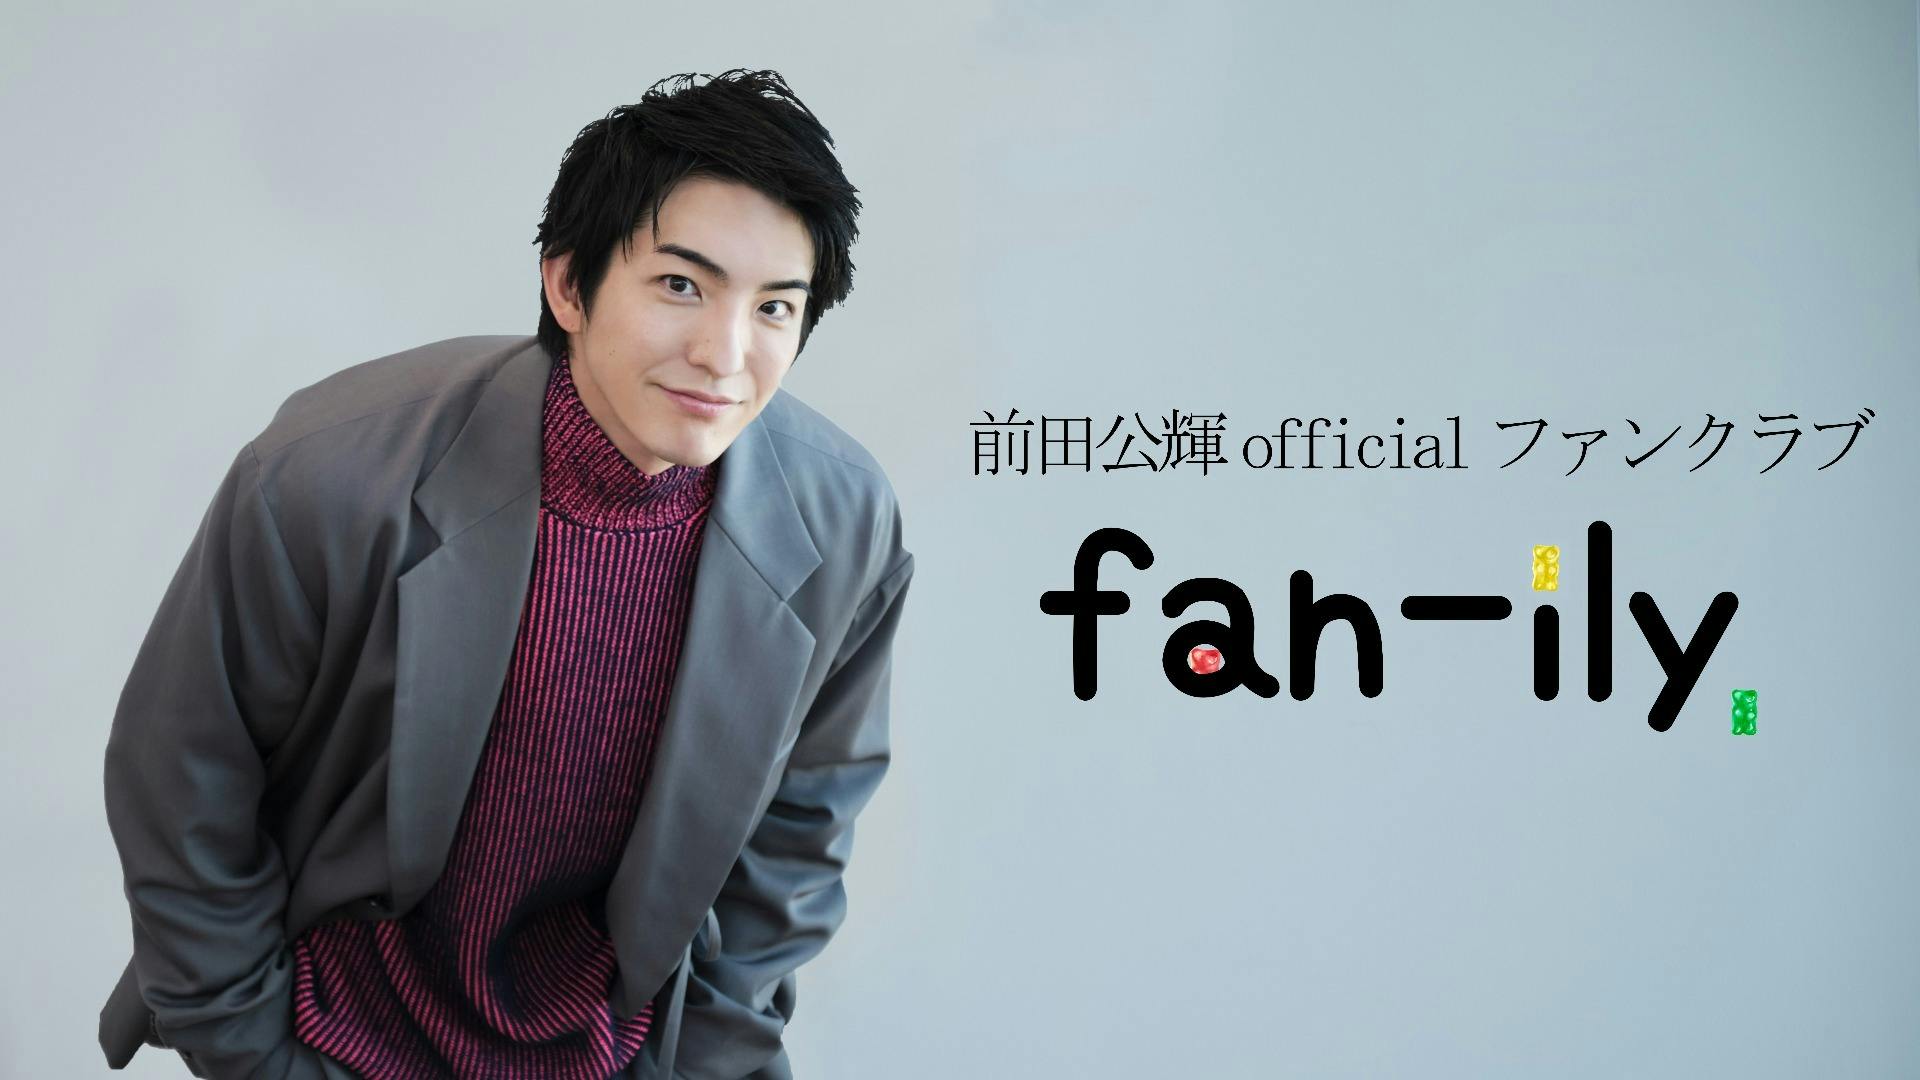 前田公輝officialファンクラブ「fan-ily」 - DMMオンラインサロン